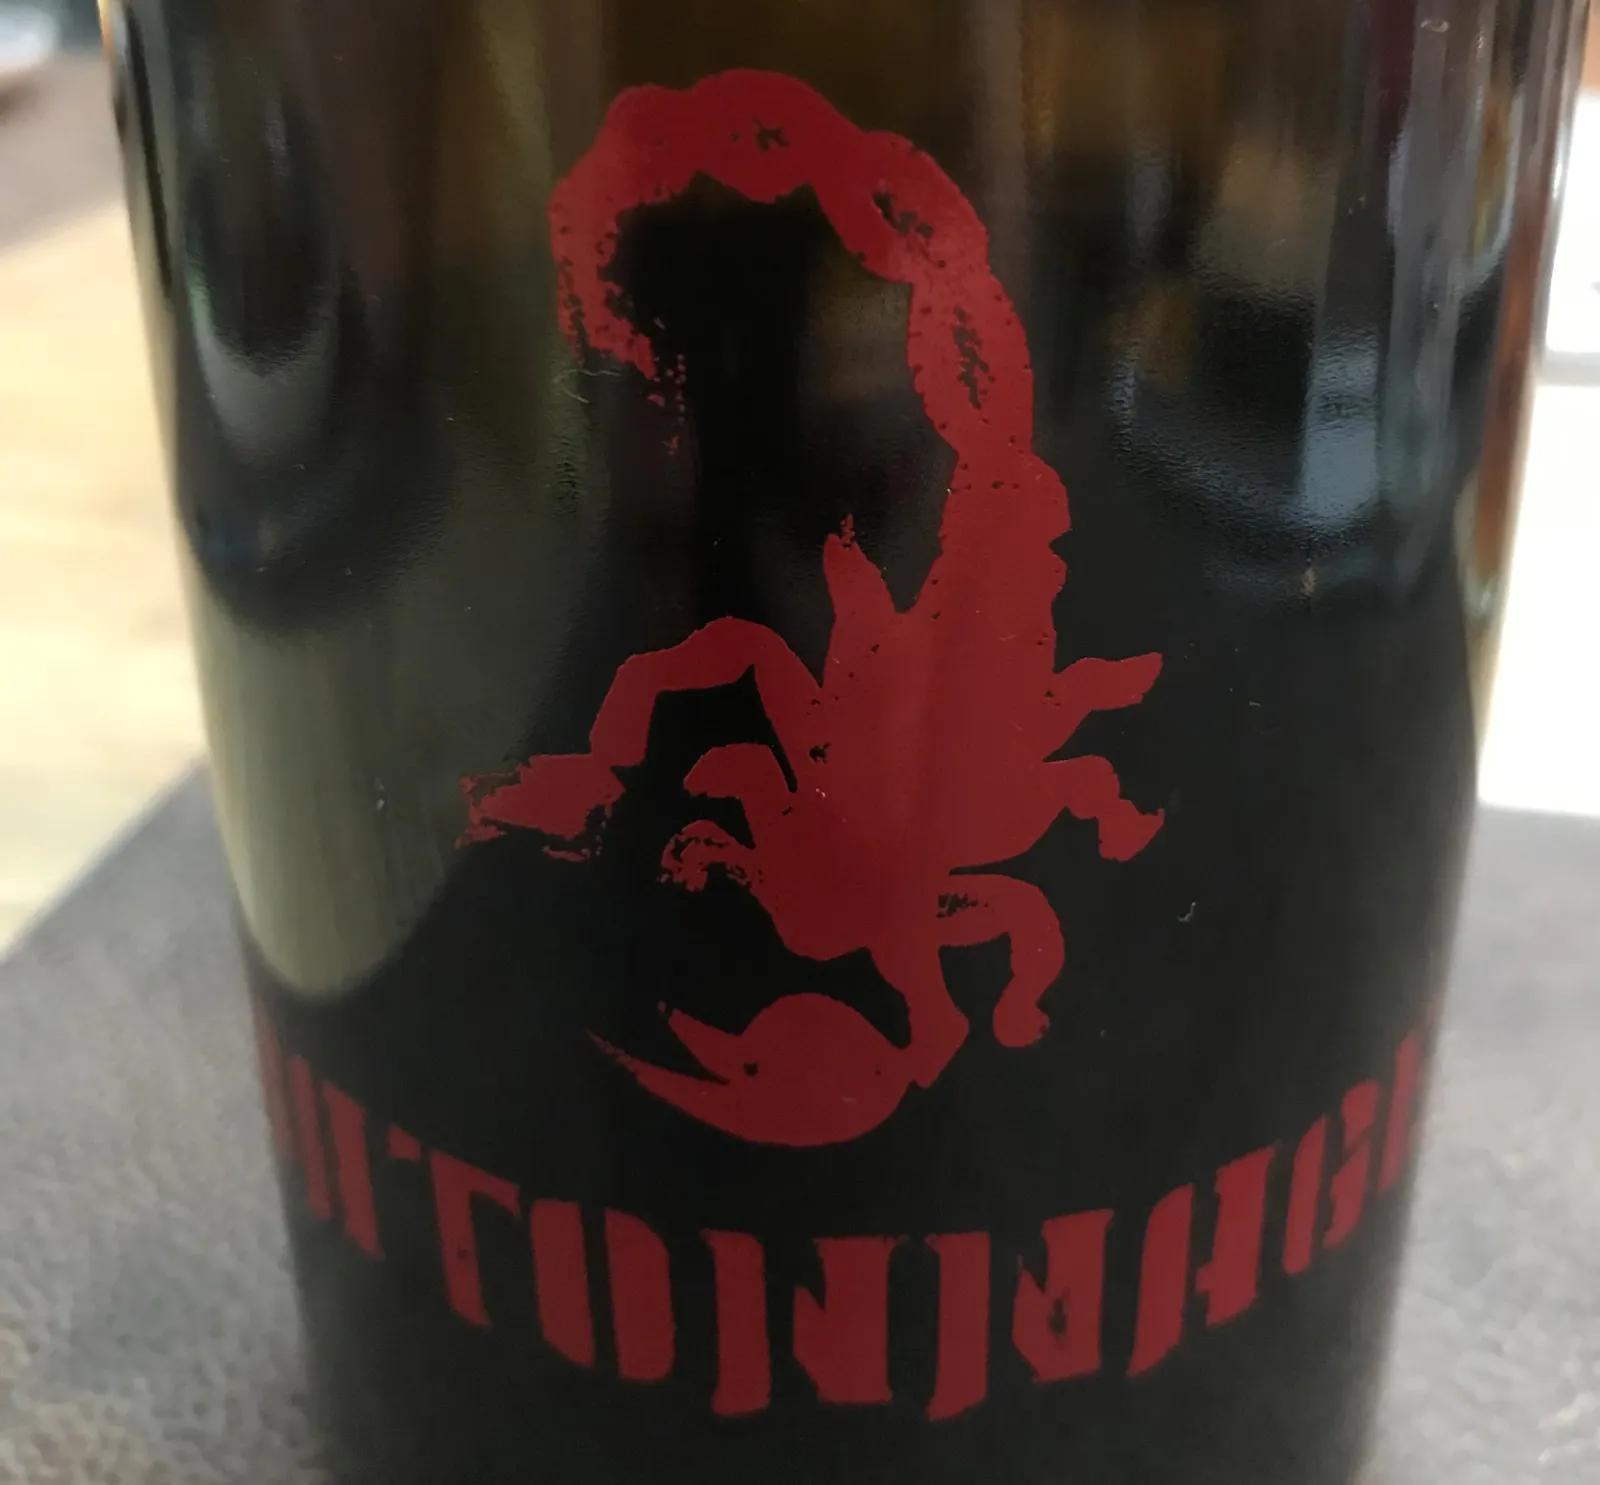 Ein roter Skorpion ist das Etikett dieser Weinflasche